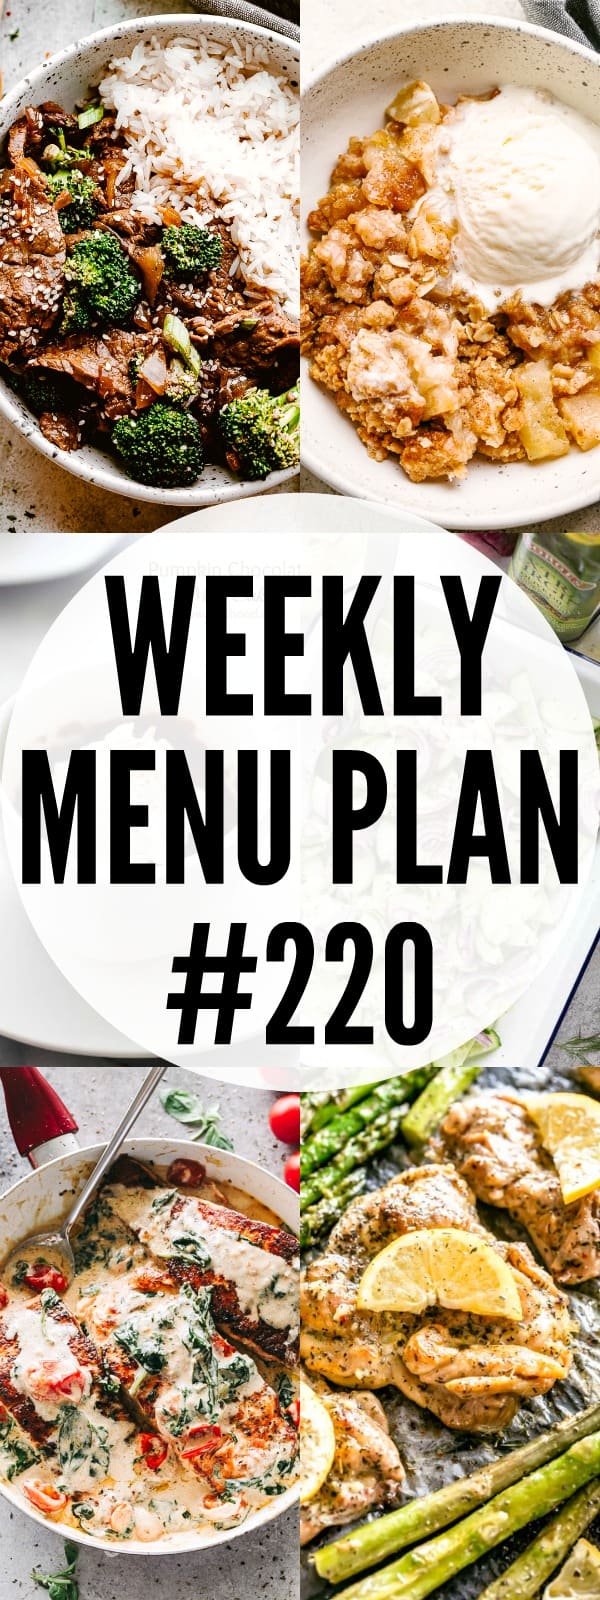 weekly menu plan #220 pin image